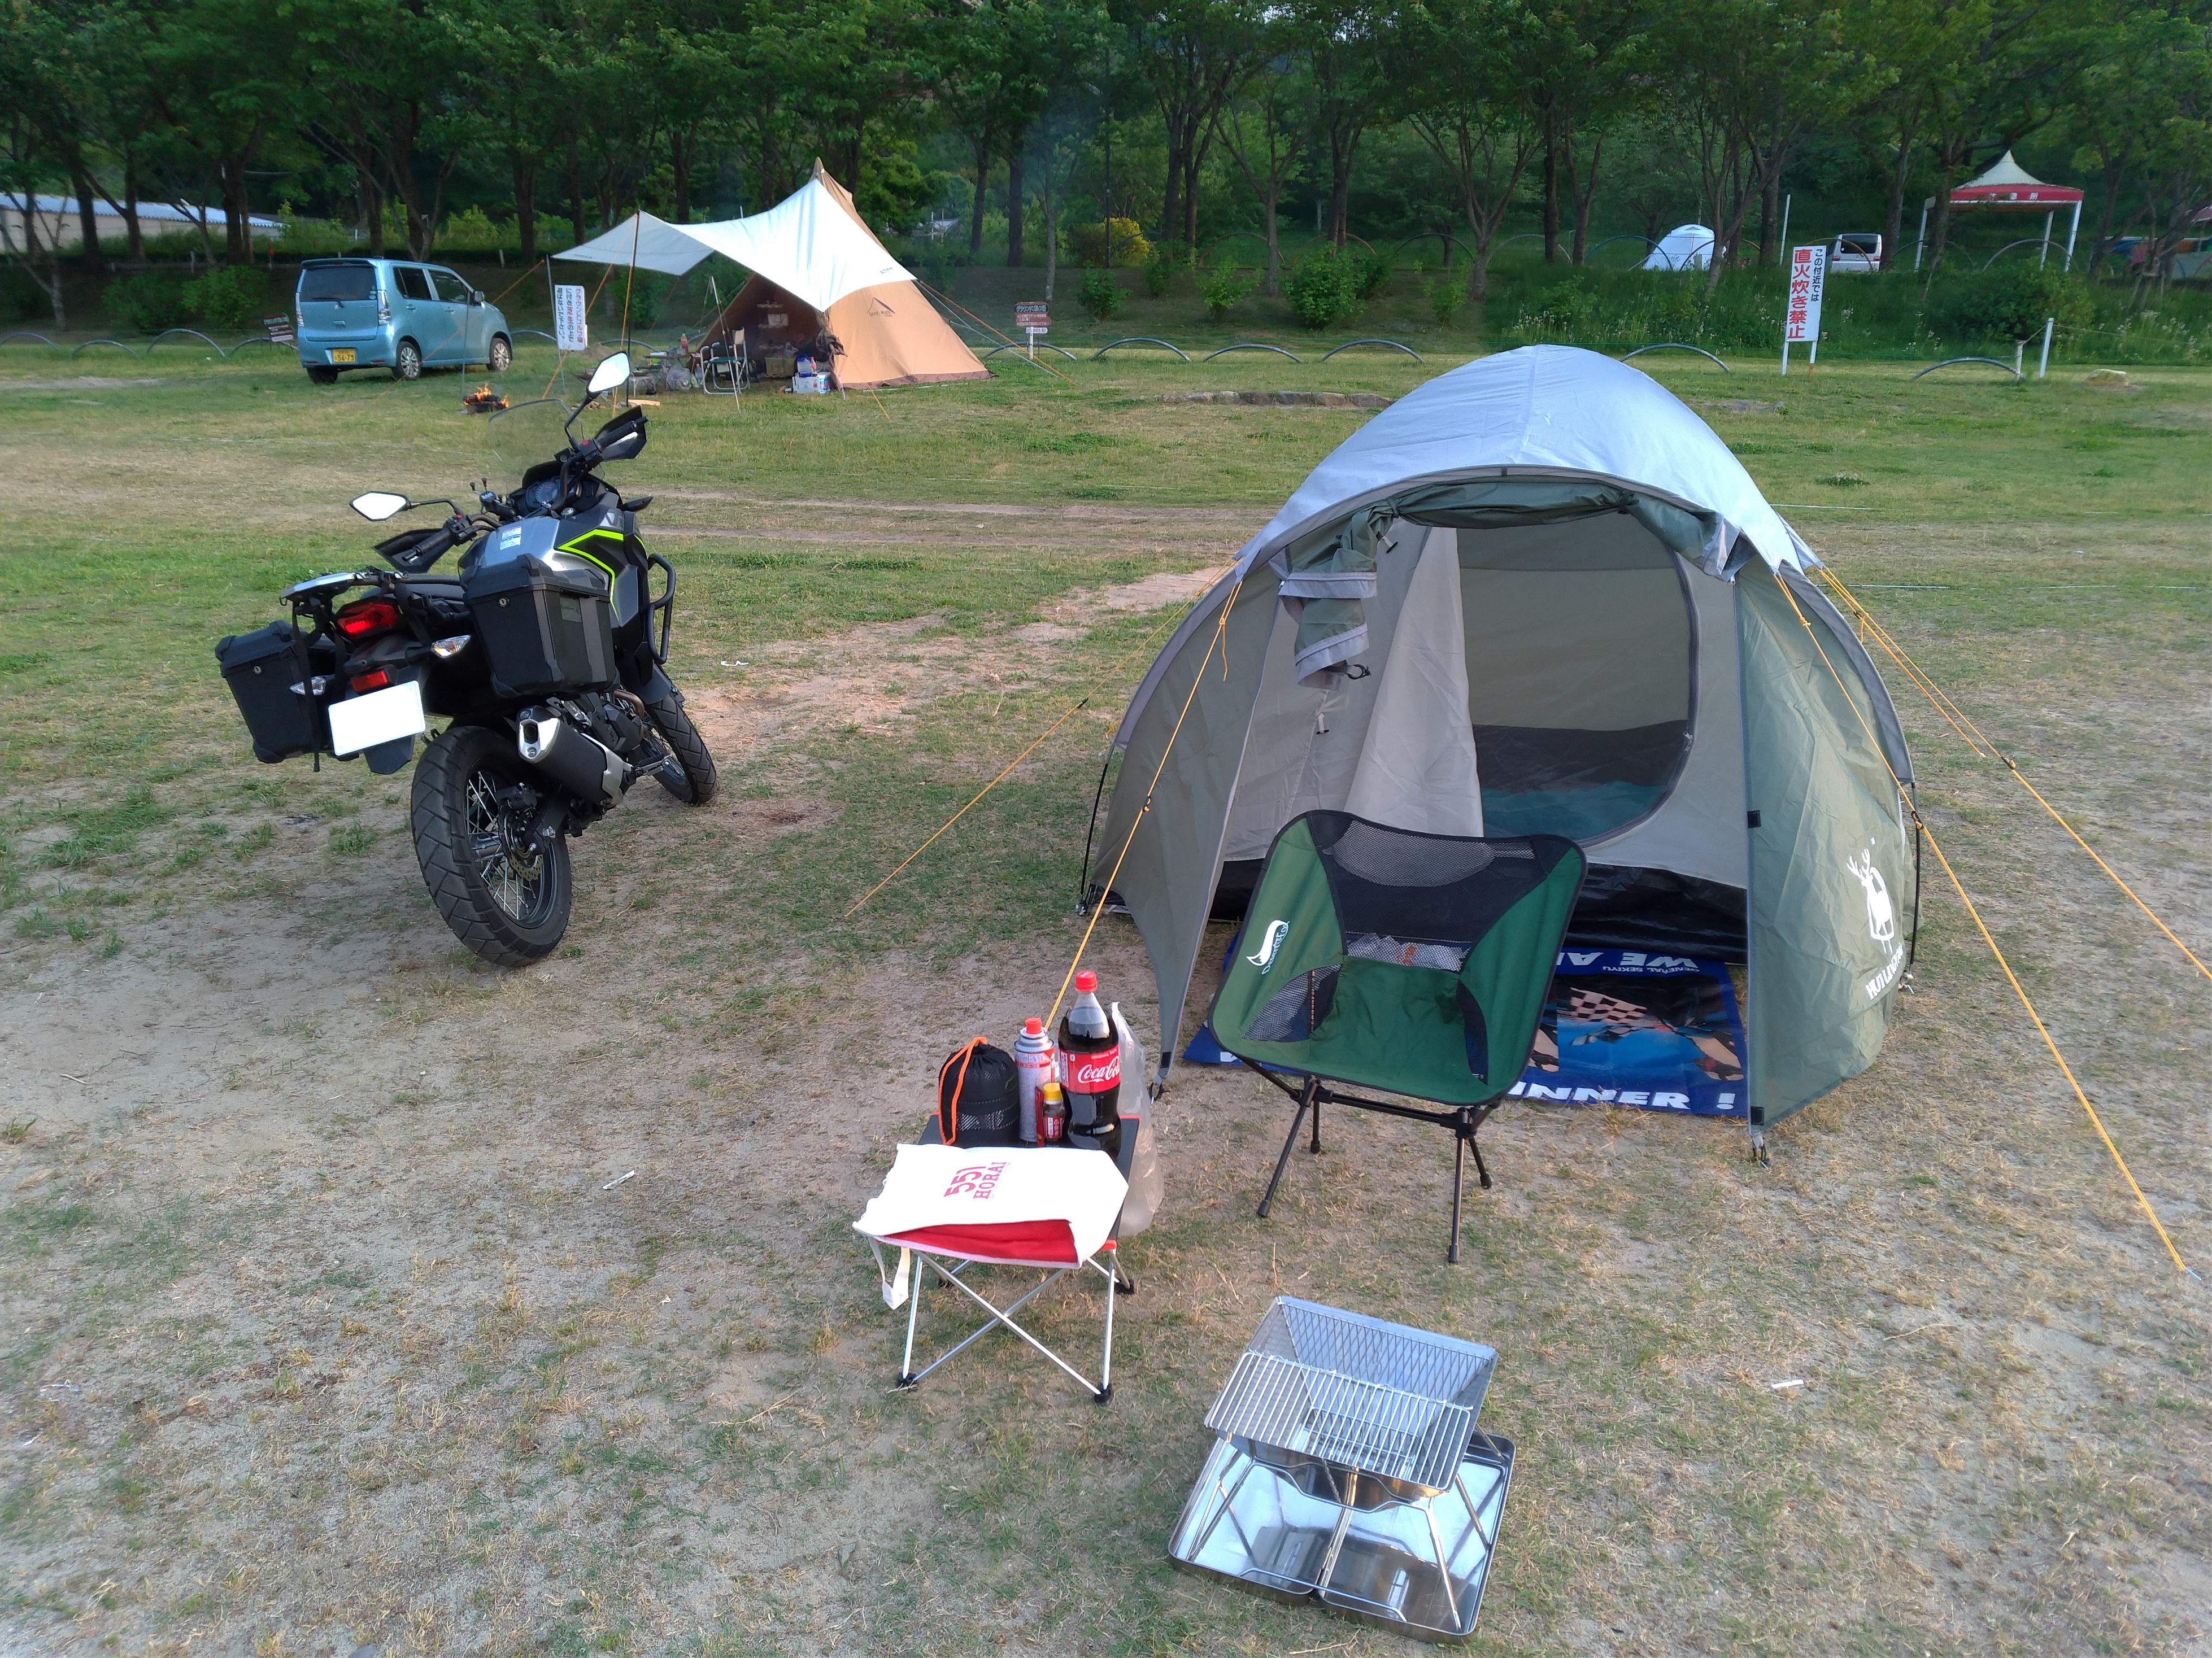 ソロキャンプ初心者が購入したキャンプ用品紹介(キャンプツーリング用でも) | 目移りしがちな趣味ブログ